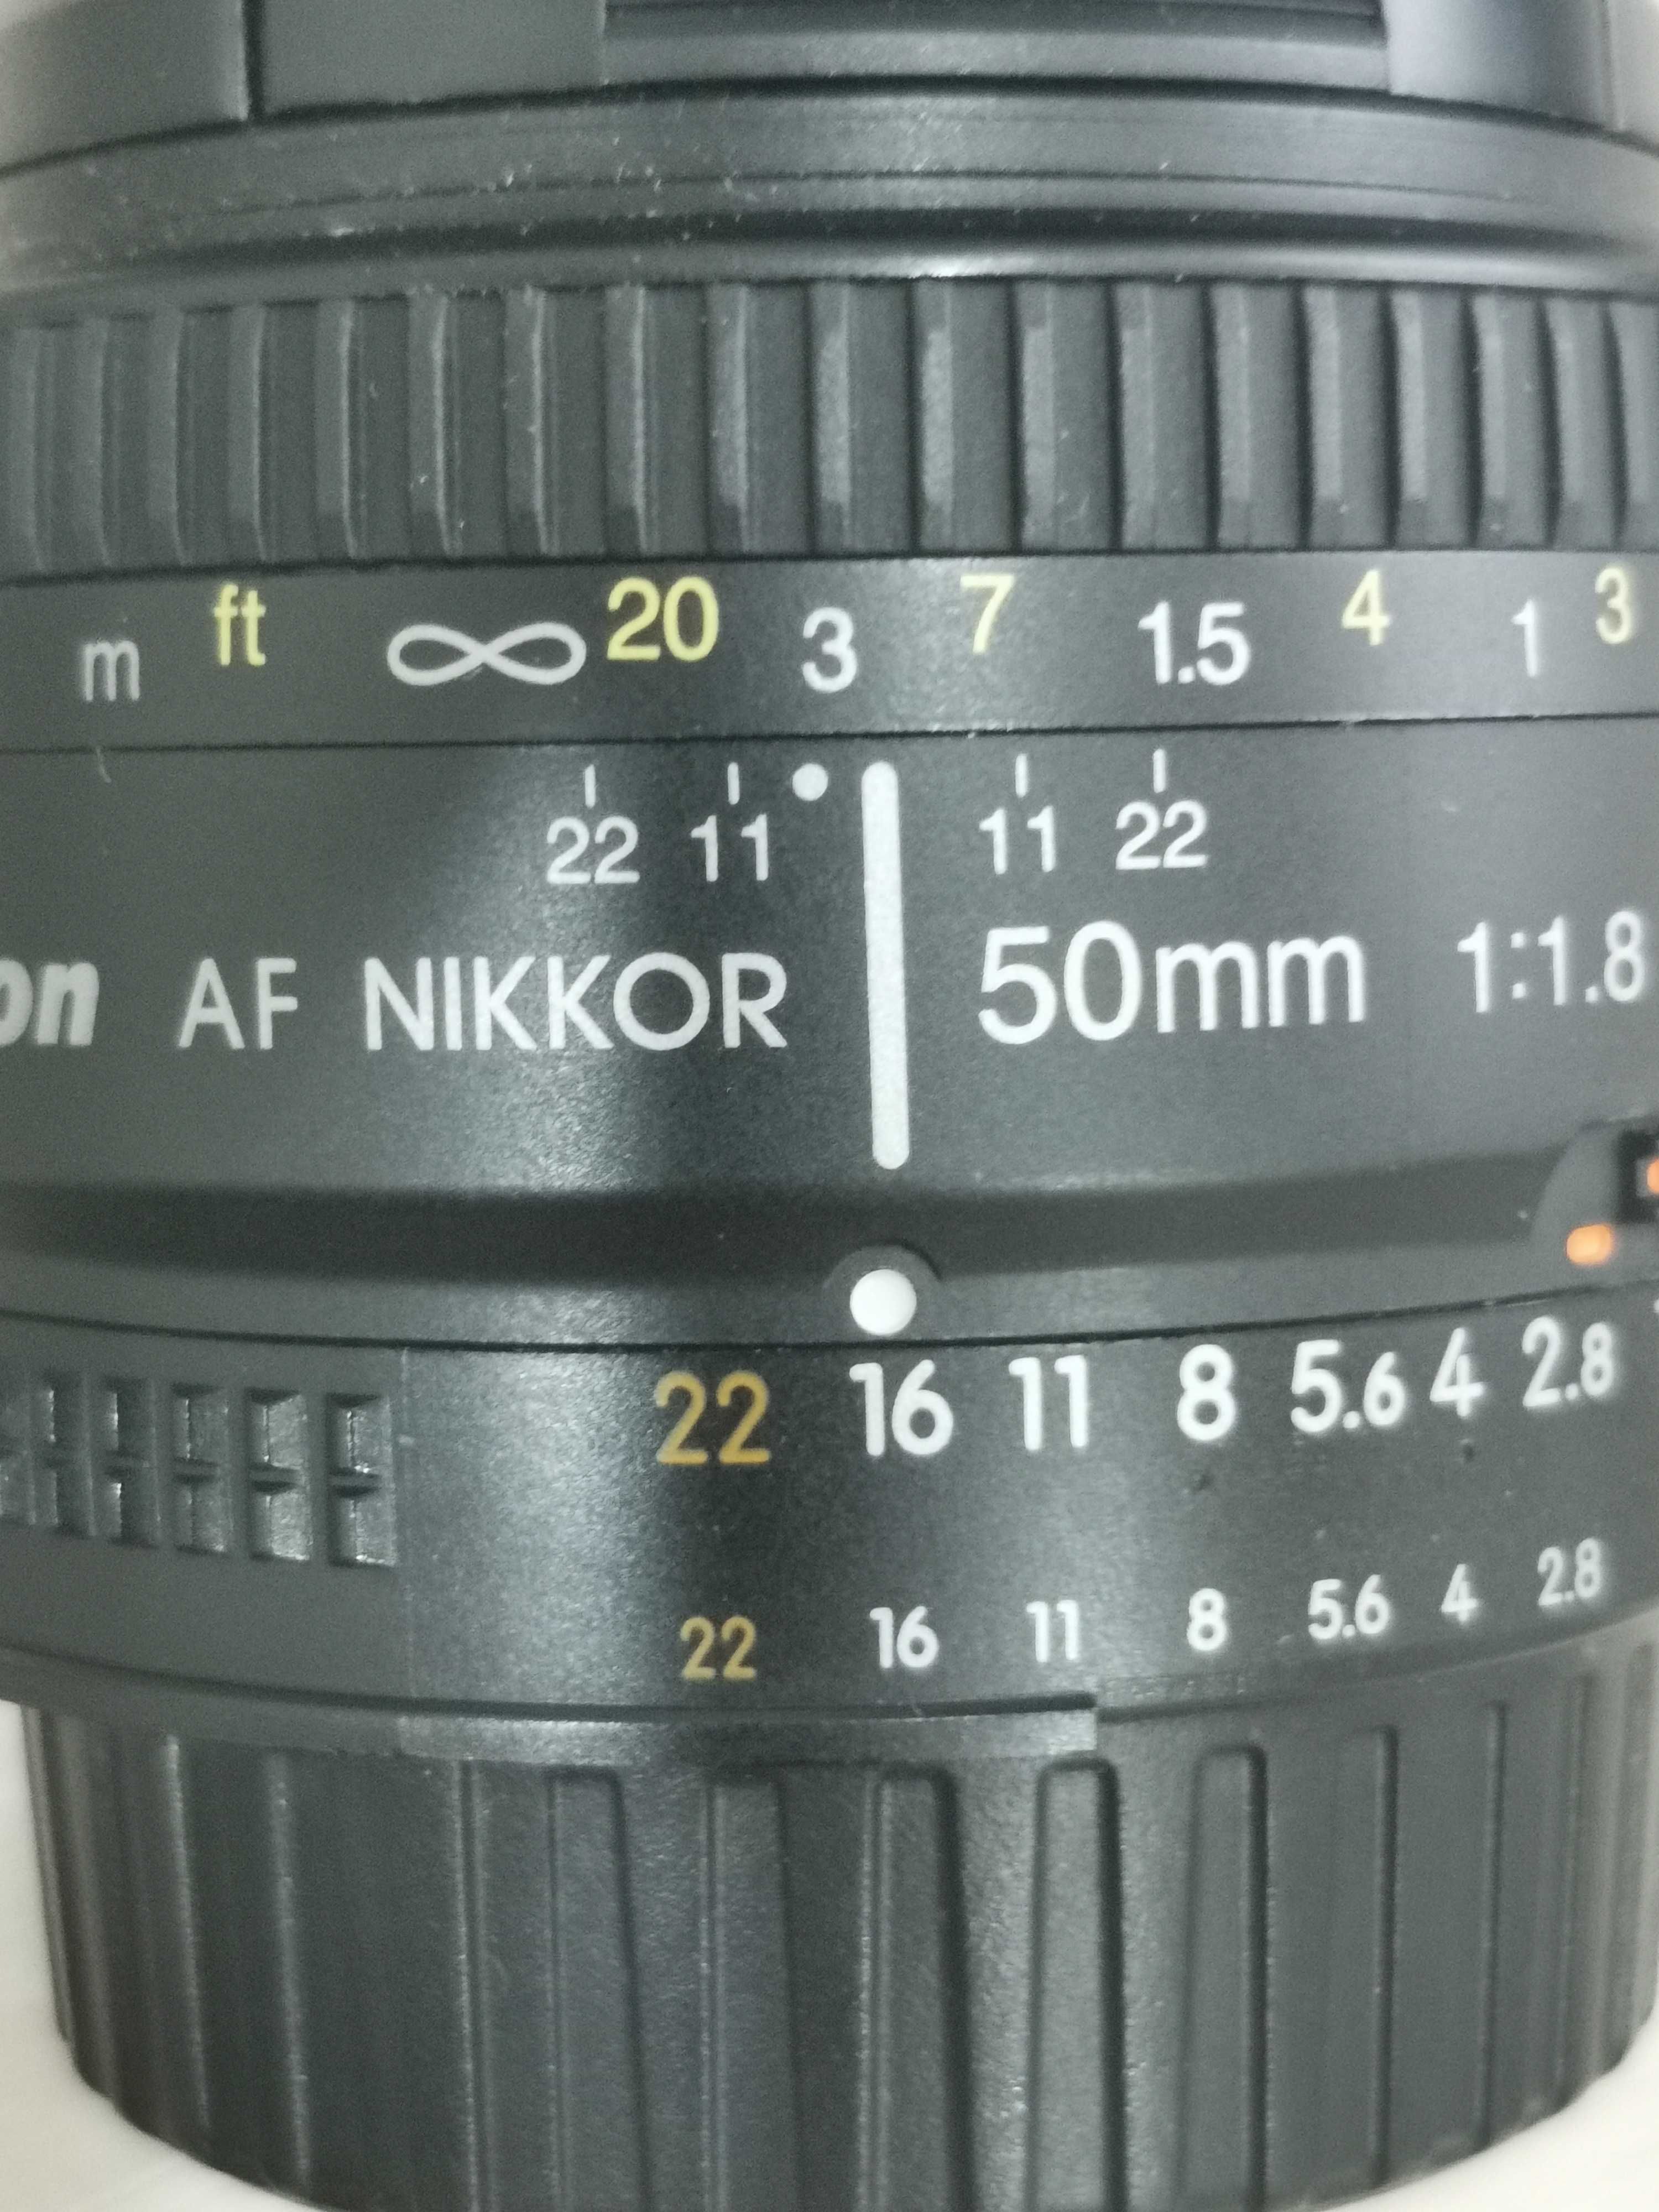 СРОЧНО! Камера Nikon D5300